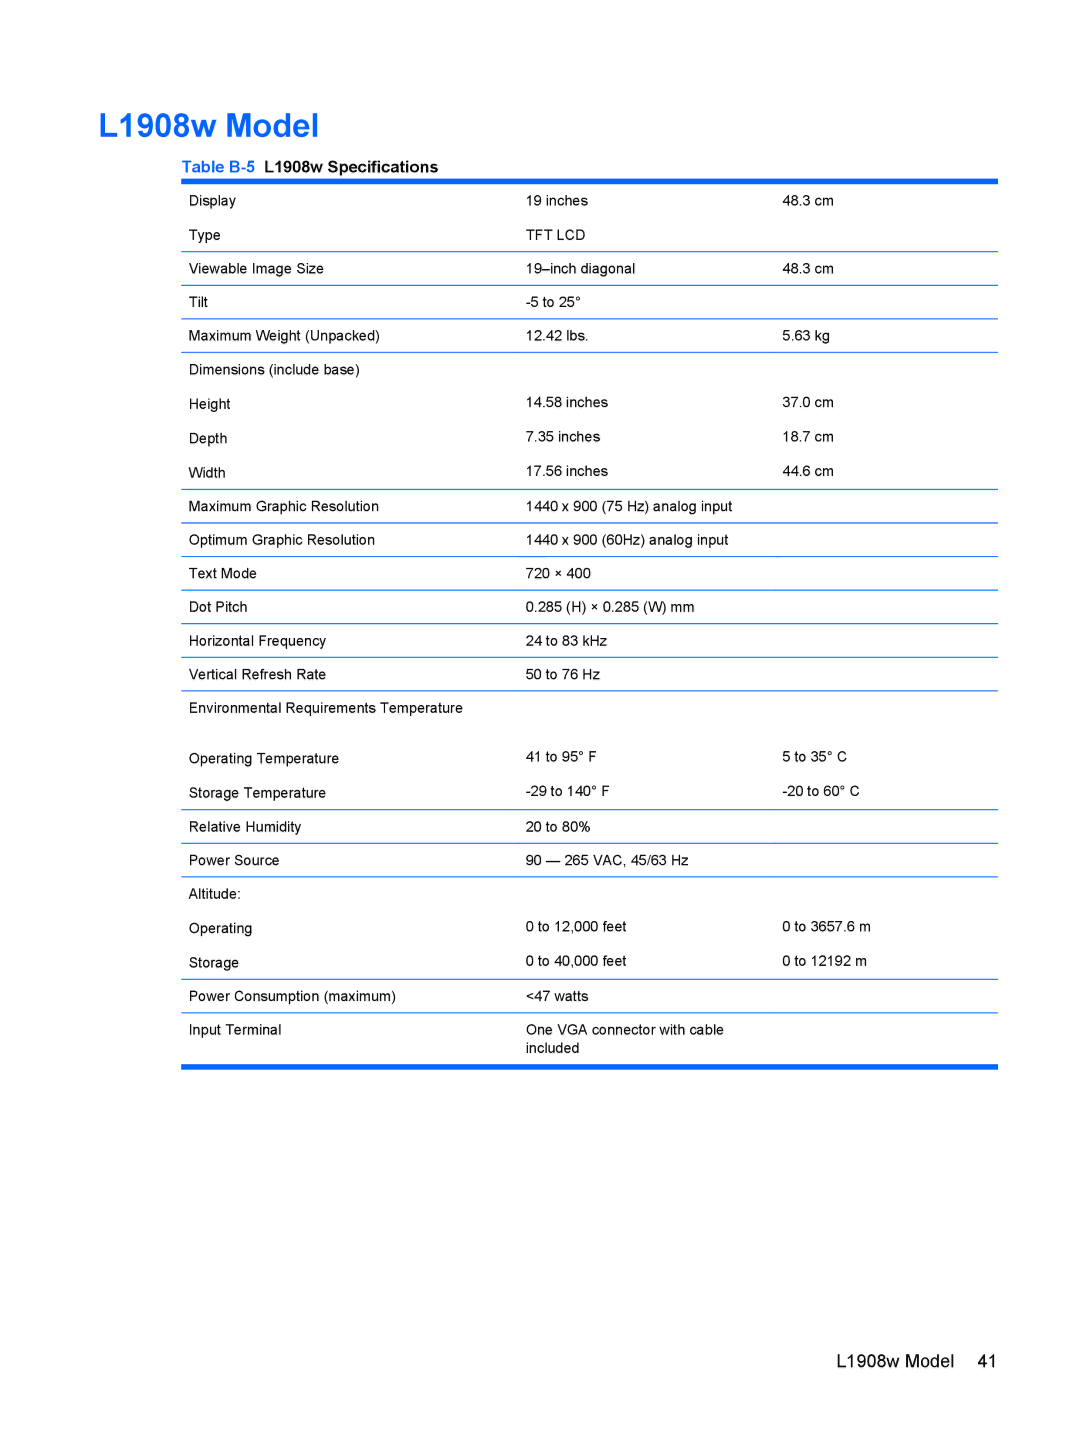 HP L1908w 19-inch manual L1908w Model, Table B-5L1908w Specifications 